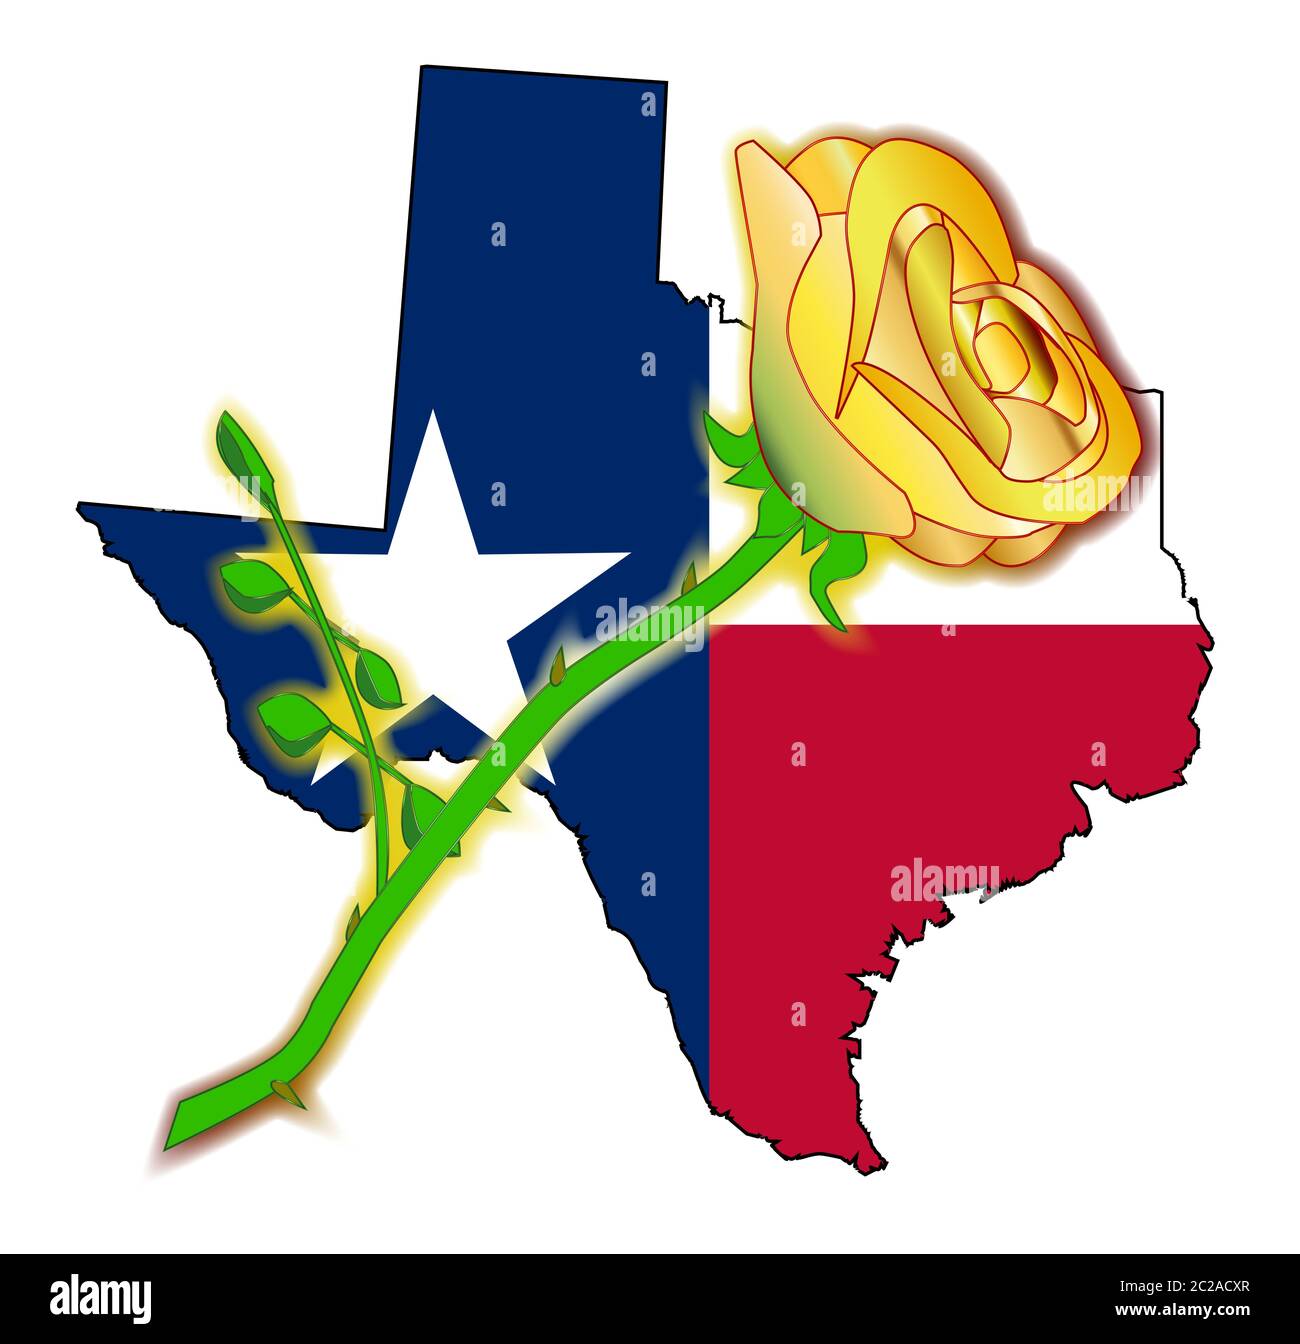 Texas gelbe rose Ausgeschnittene Stockfotos und -bilder - Alamy